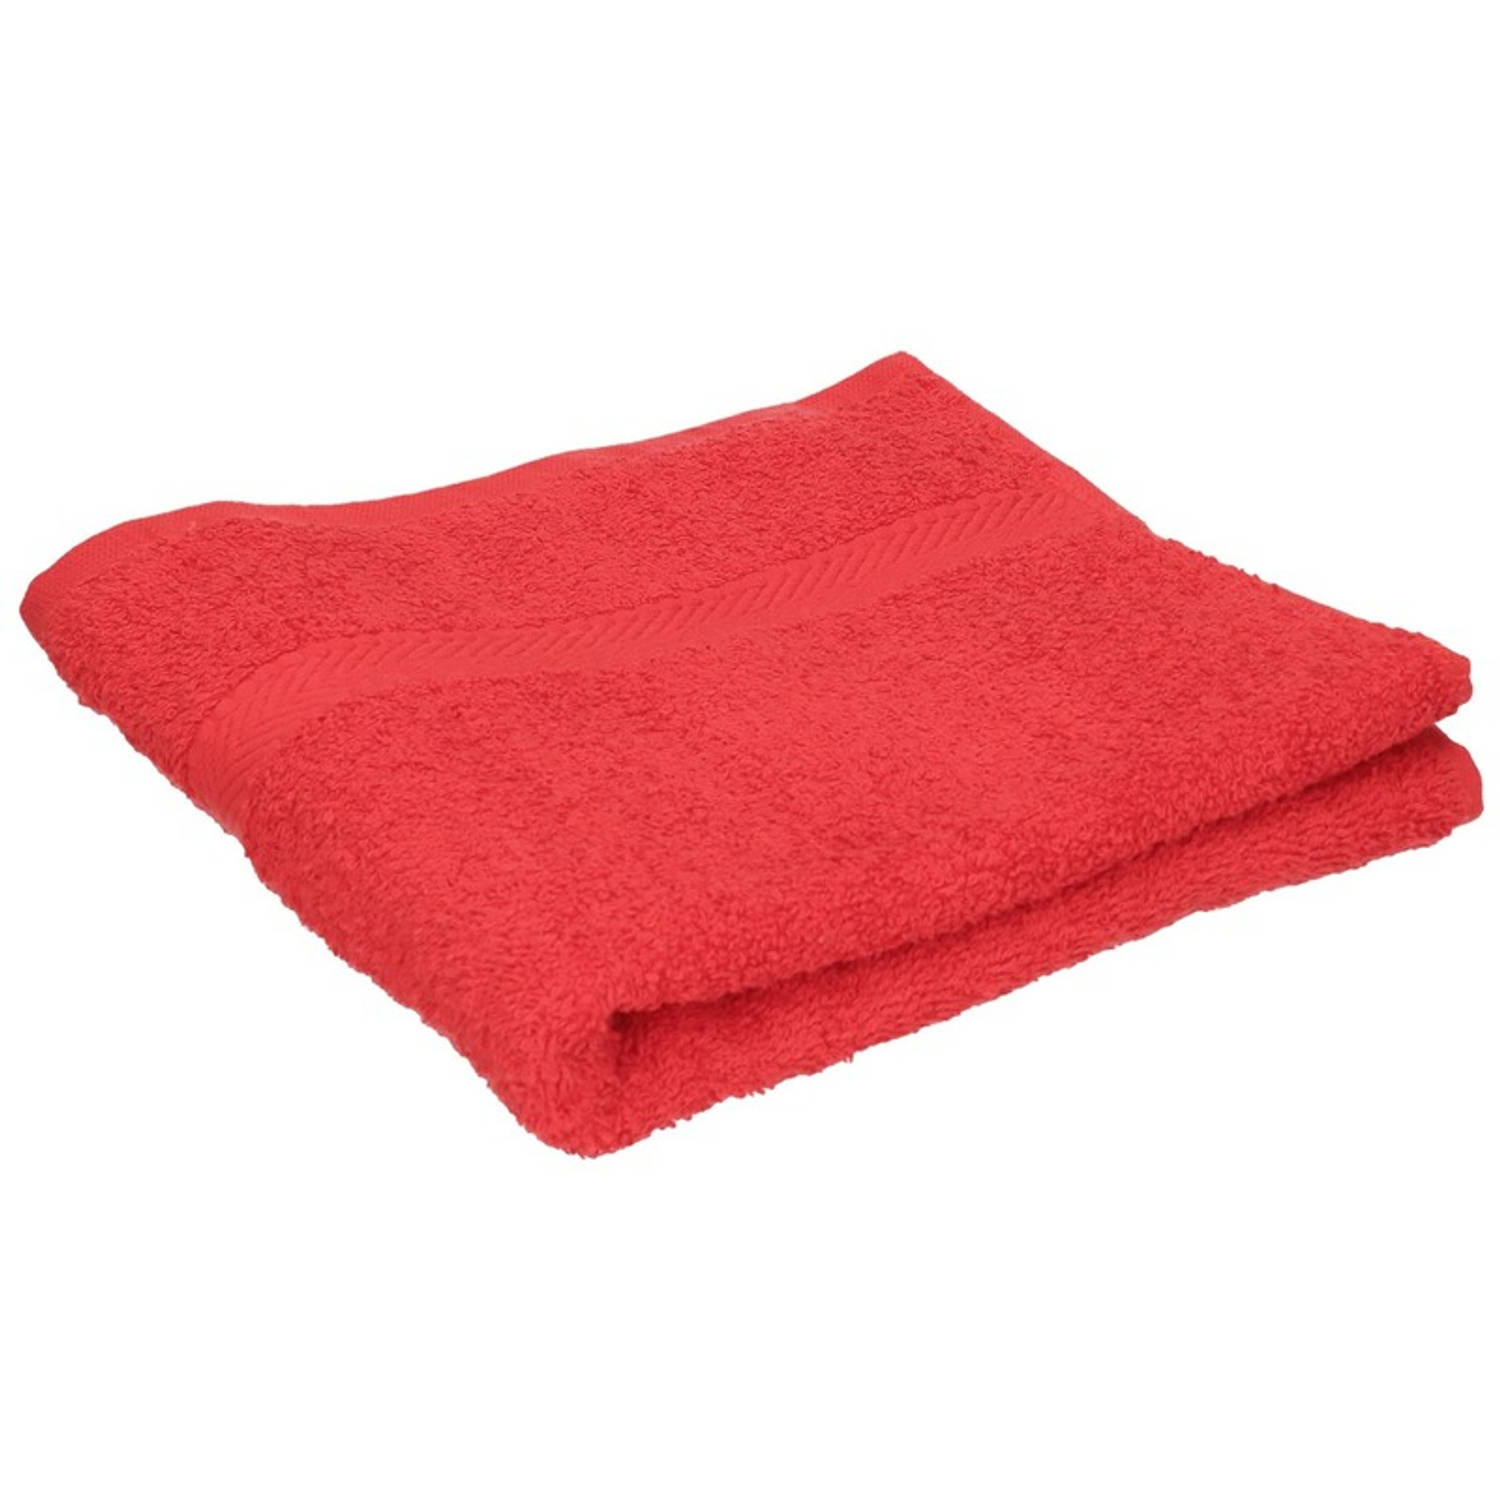 Luxe handdoek rood 50 x 90 cm 550 grams Badkamer textiel badhanddoeken